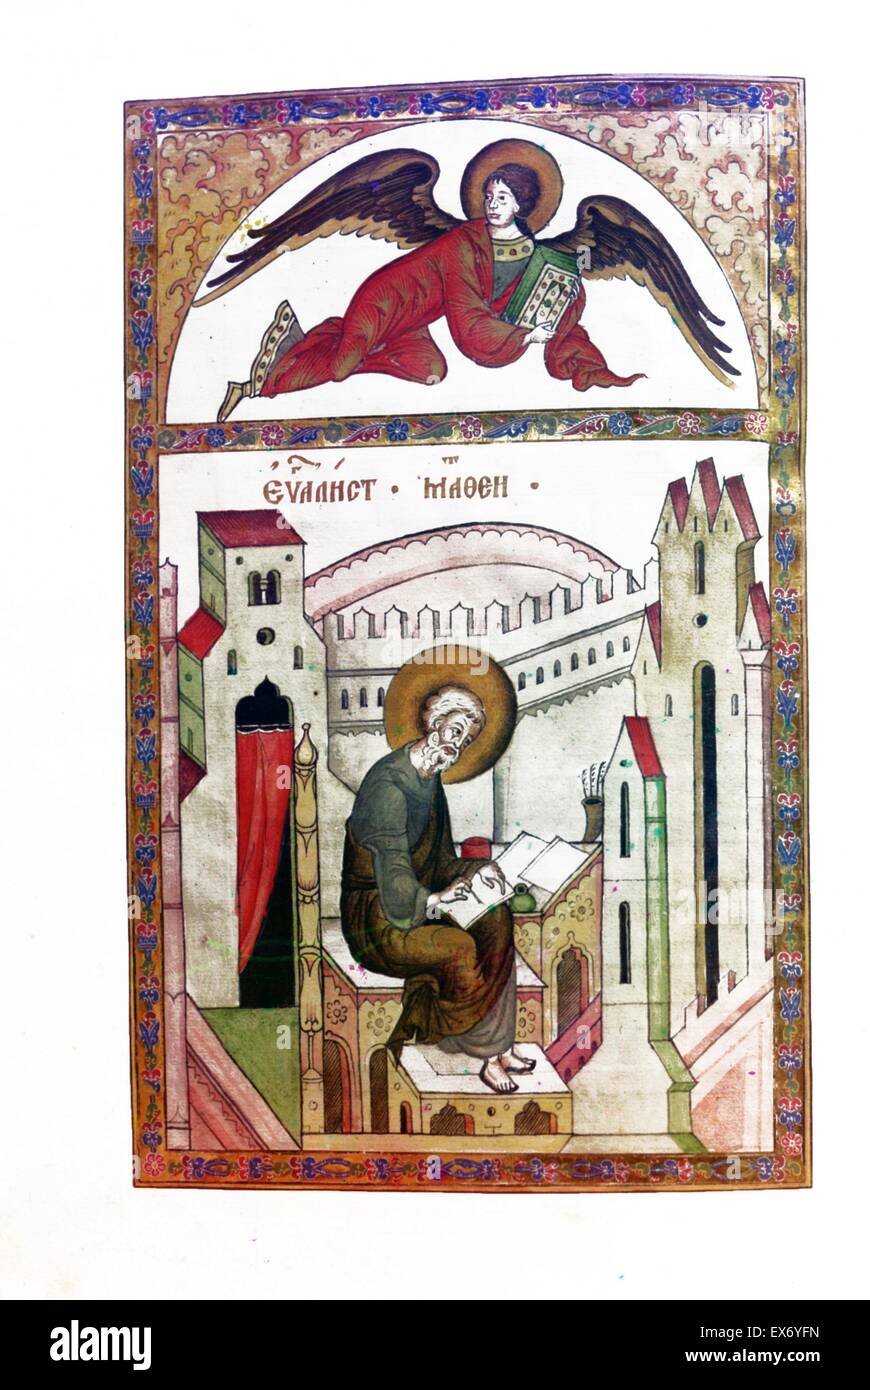 Bilder aus dem Jahre 1603-Evangelium. In der Sakristei des Klosters Ipatevskii. Prokudin-Gorskii, Sergei Mikhailovich, 1863-1944 Fotograf. Stockfoto